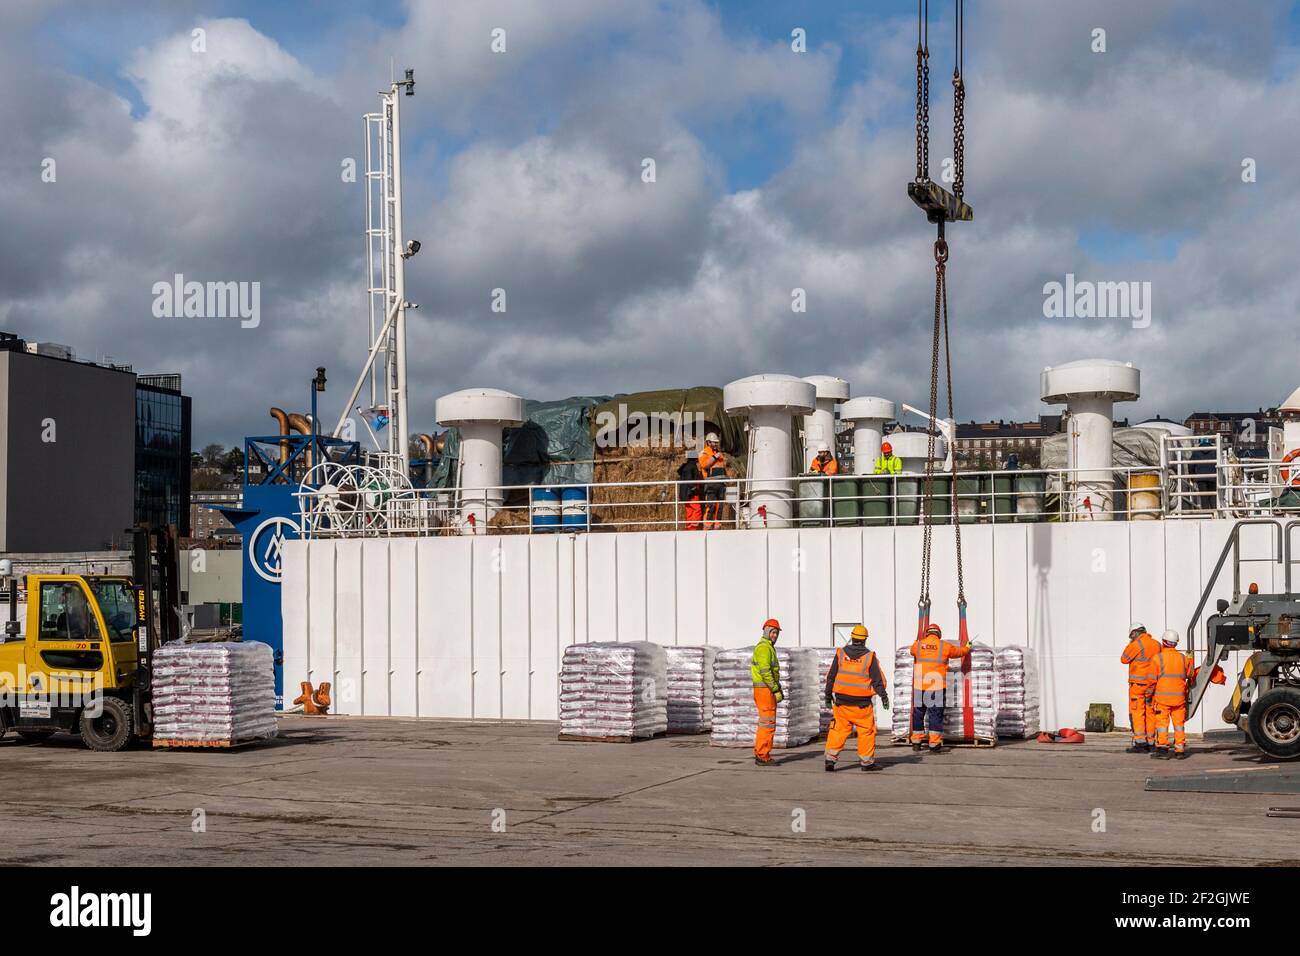 Cork, Irlanda. 12 marzo 2021. La nave per il trasporto di bestiame Finola M viene caricata con mangime al Kennedy Quay, porto di Cork, prima che il bestiame venga caricato domani per l'esportazione. Credit: AG News/Alamy Live News Foto Stock